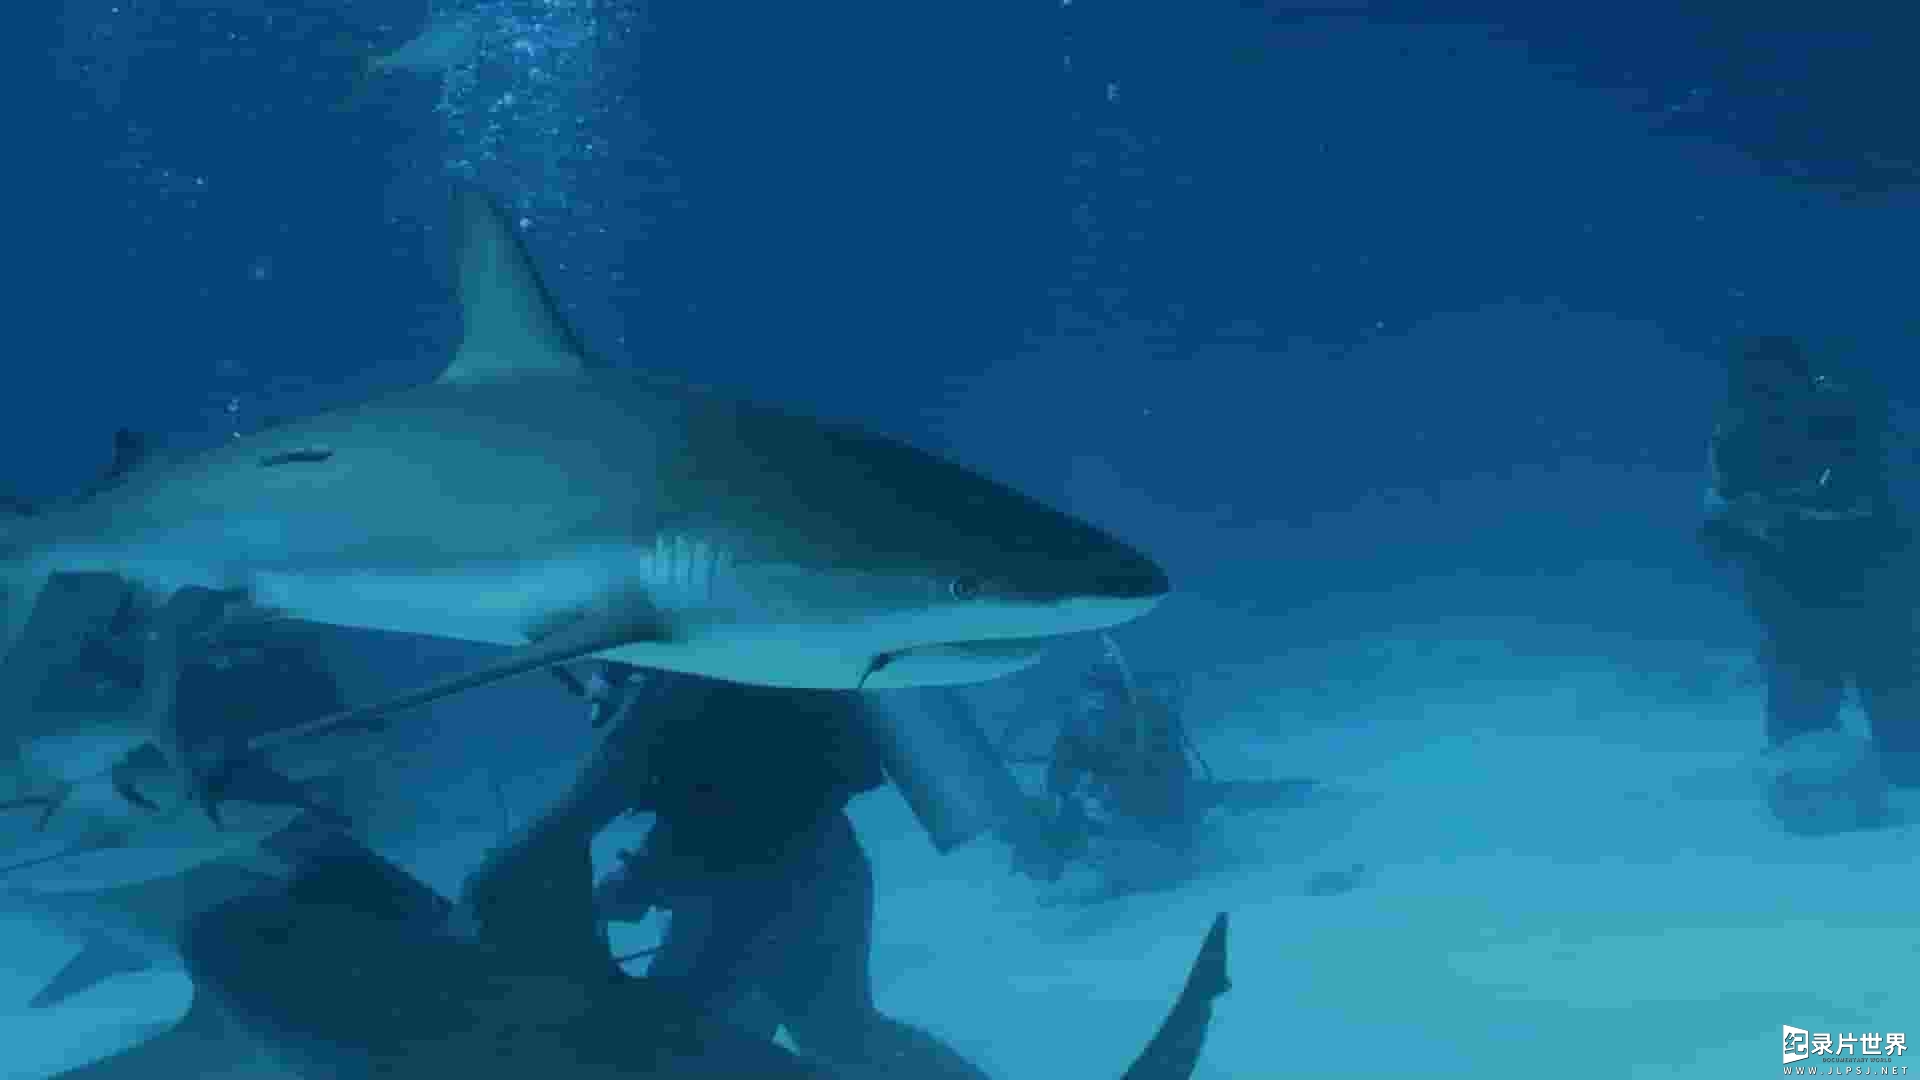 国家地理《百慕大三角：鲨魚 Sharks of the Bermuda Triangle 2020》全1集 